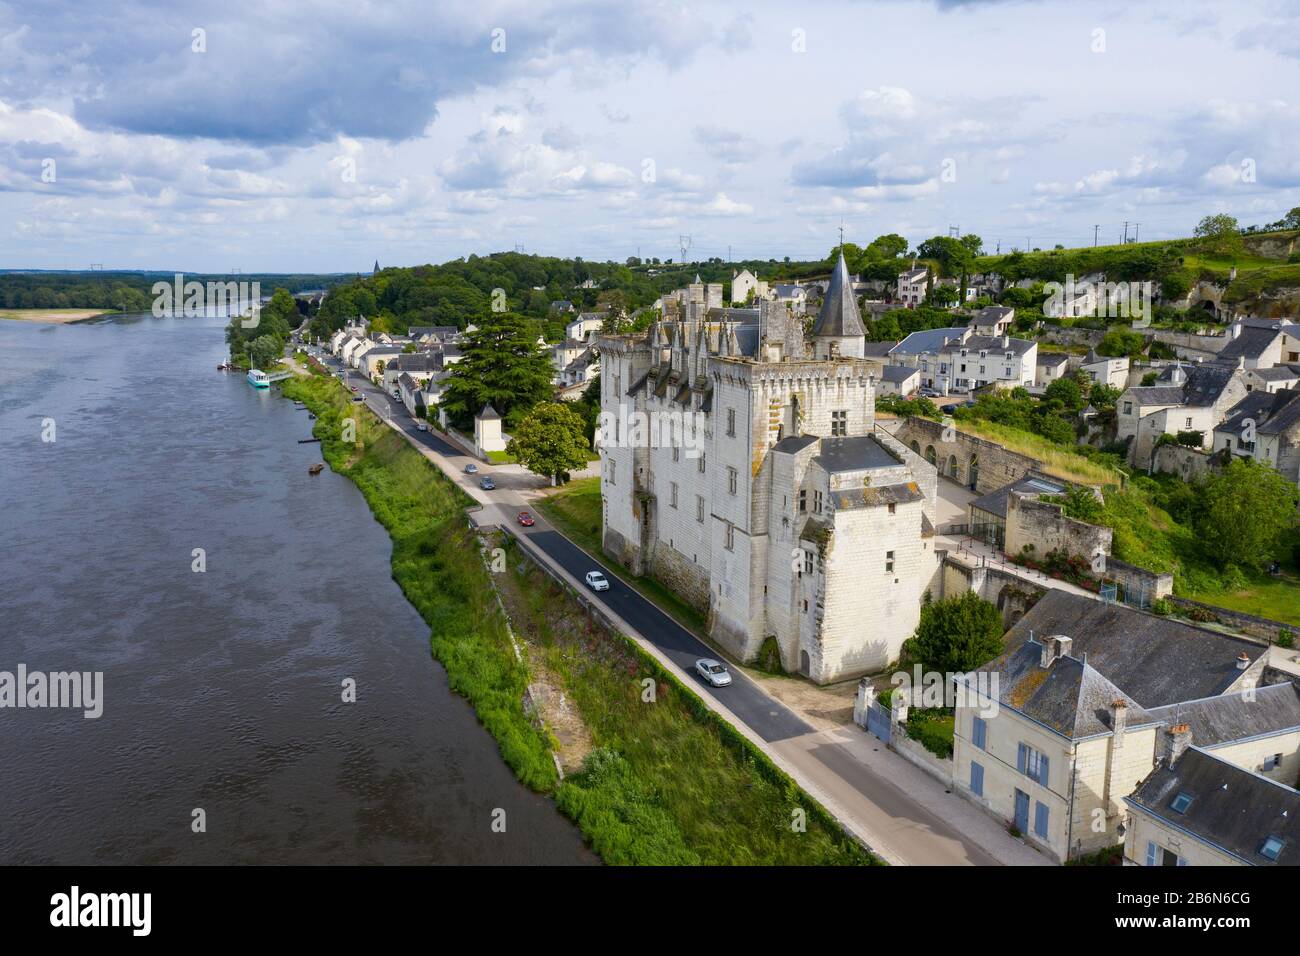 Luftbild des Schlosses von Montsoreau am Zusammenfluss von Loiré und Vienne. Montsoreau (Die Schönsten Dörfer Frankreichs genannt), Main Stockfoto